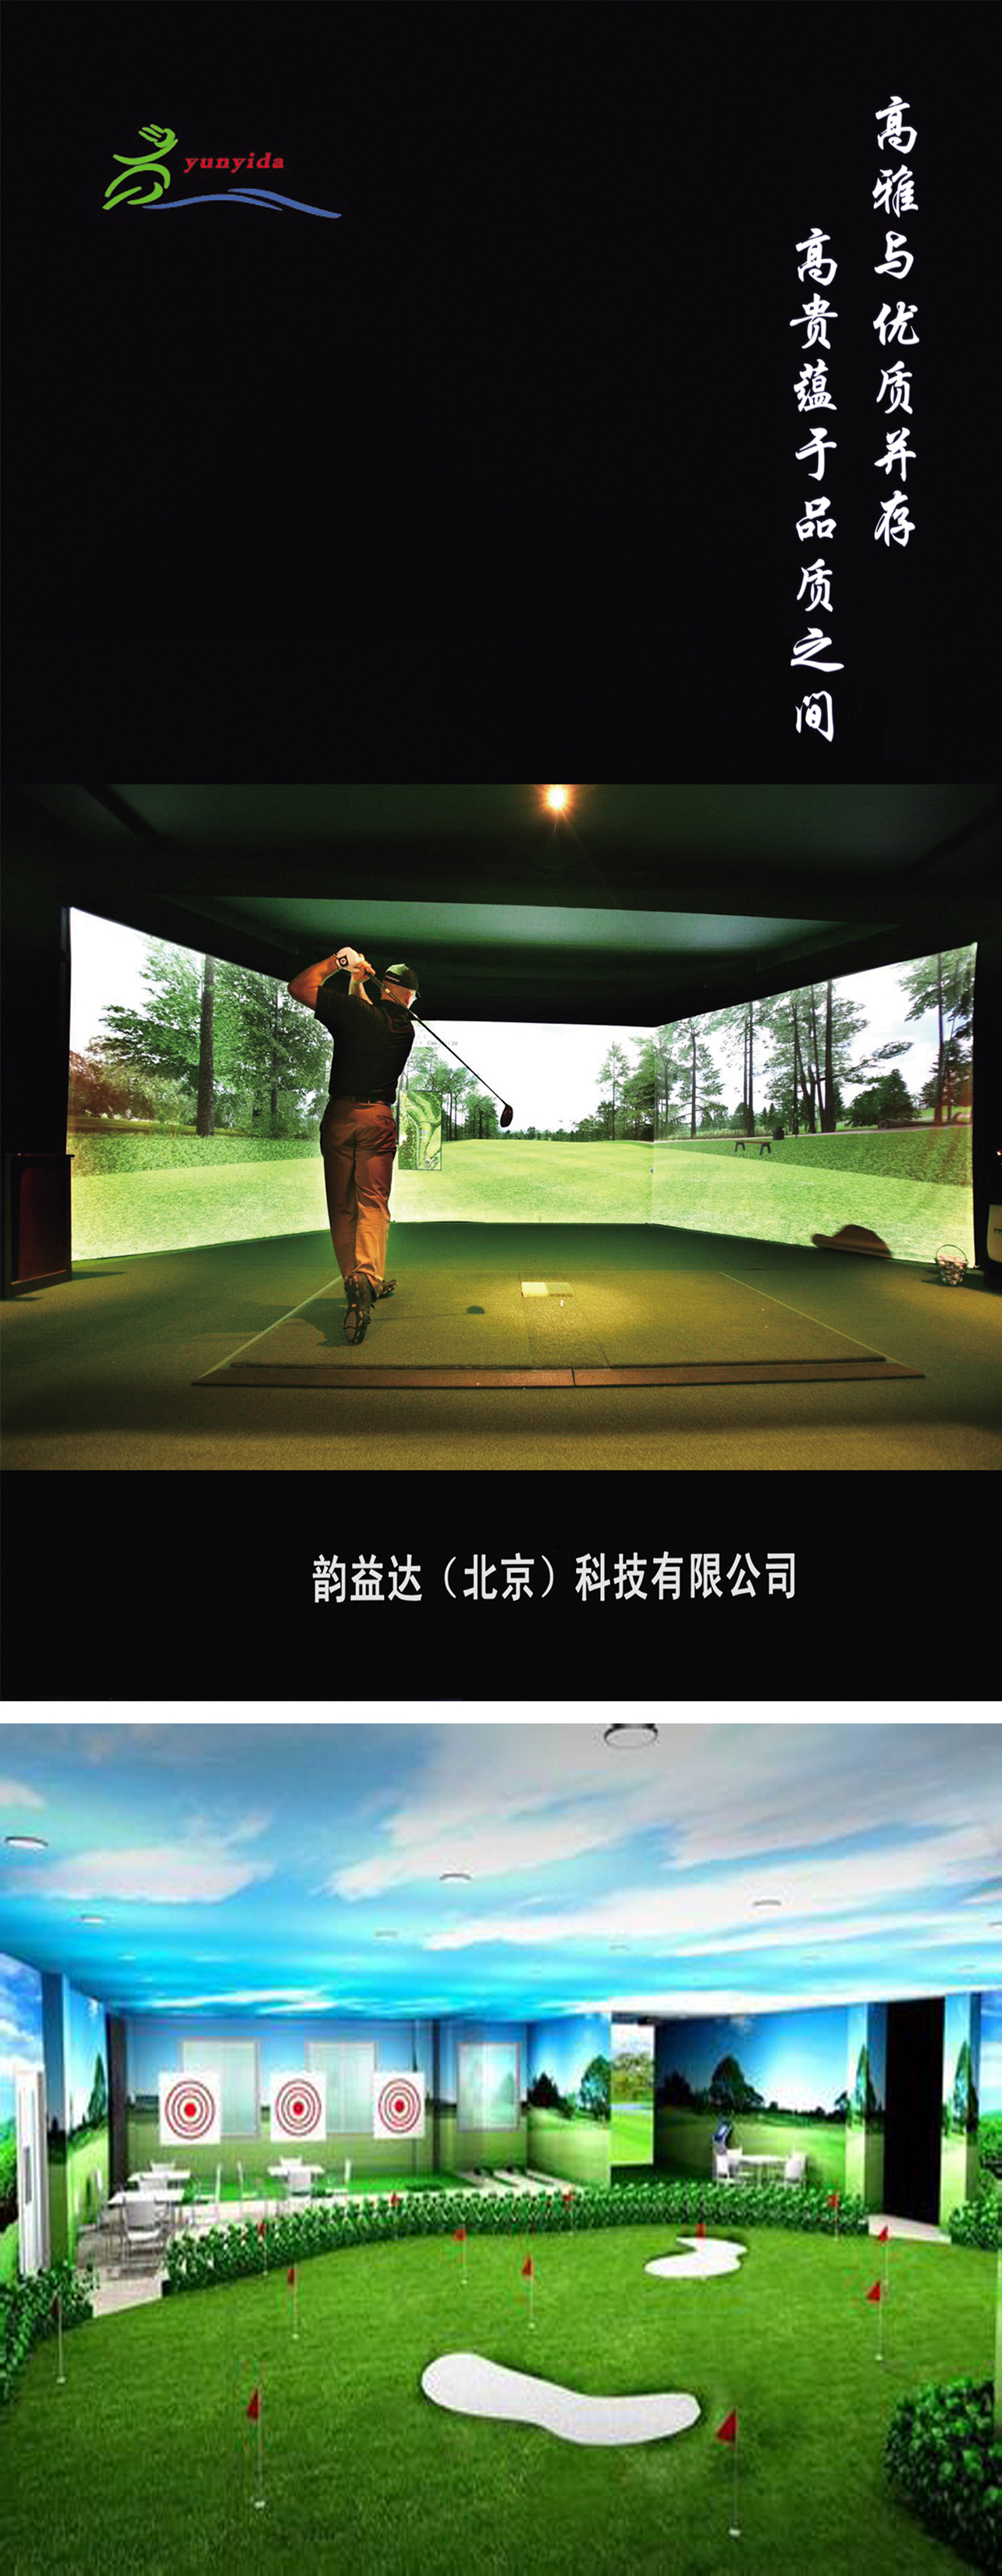 高尔夫模拟器室内设备 40.jpg